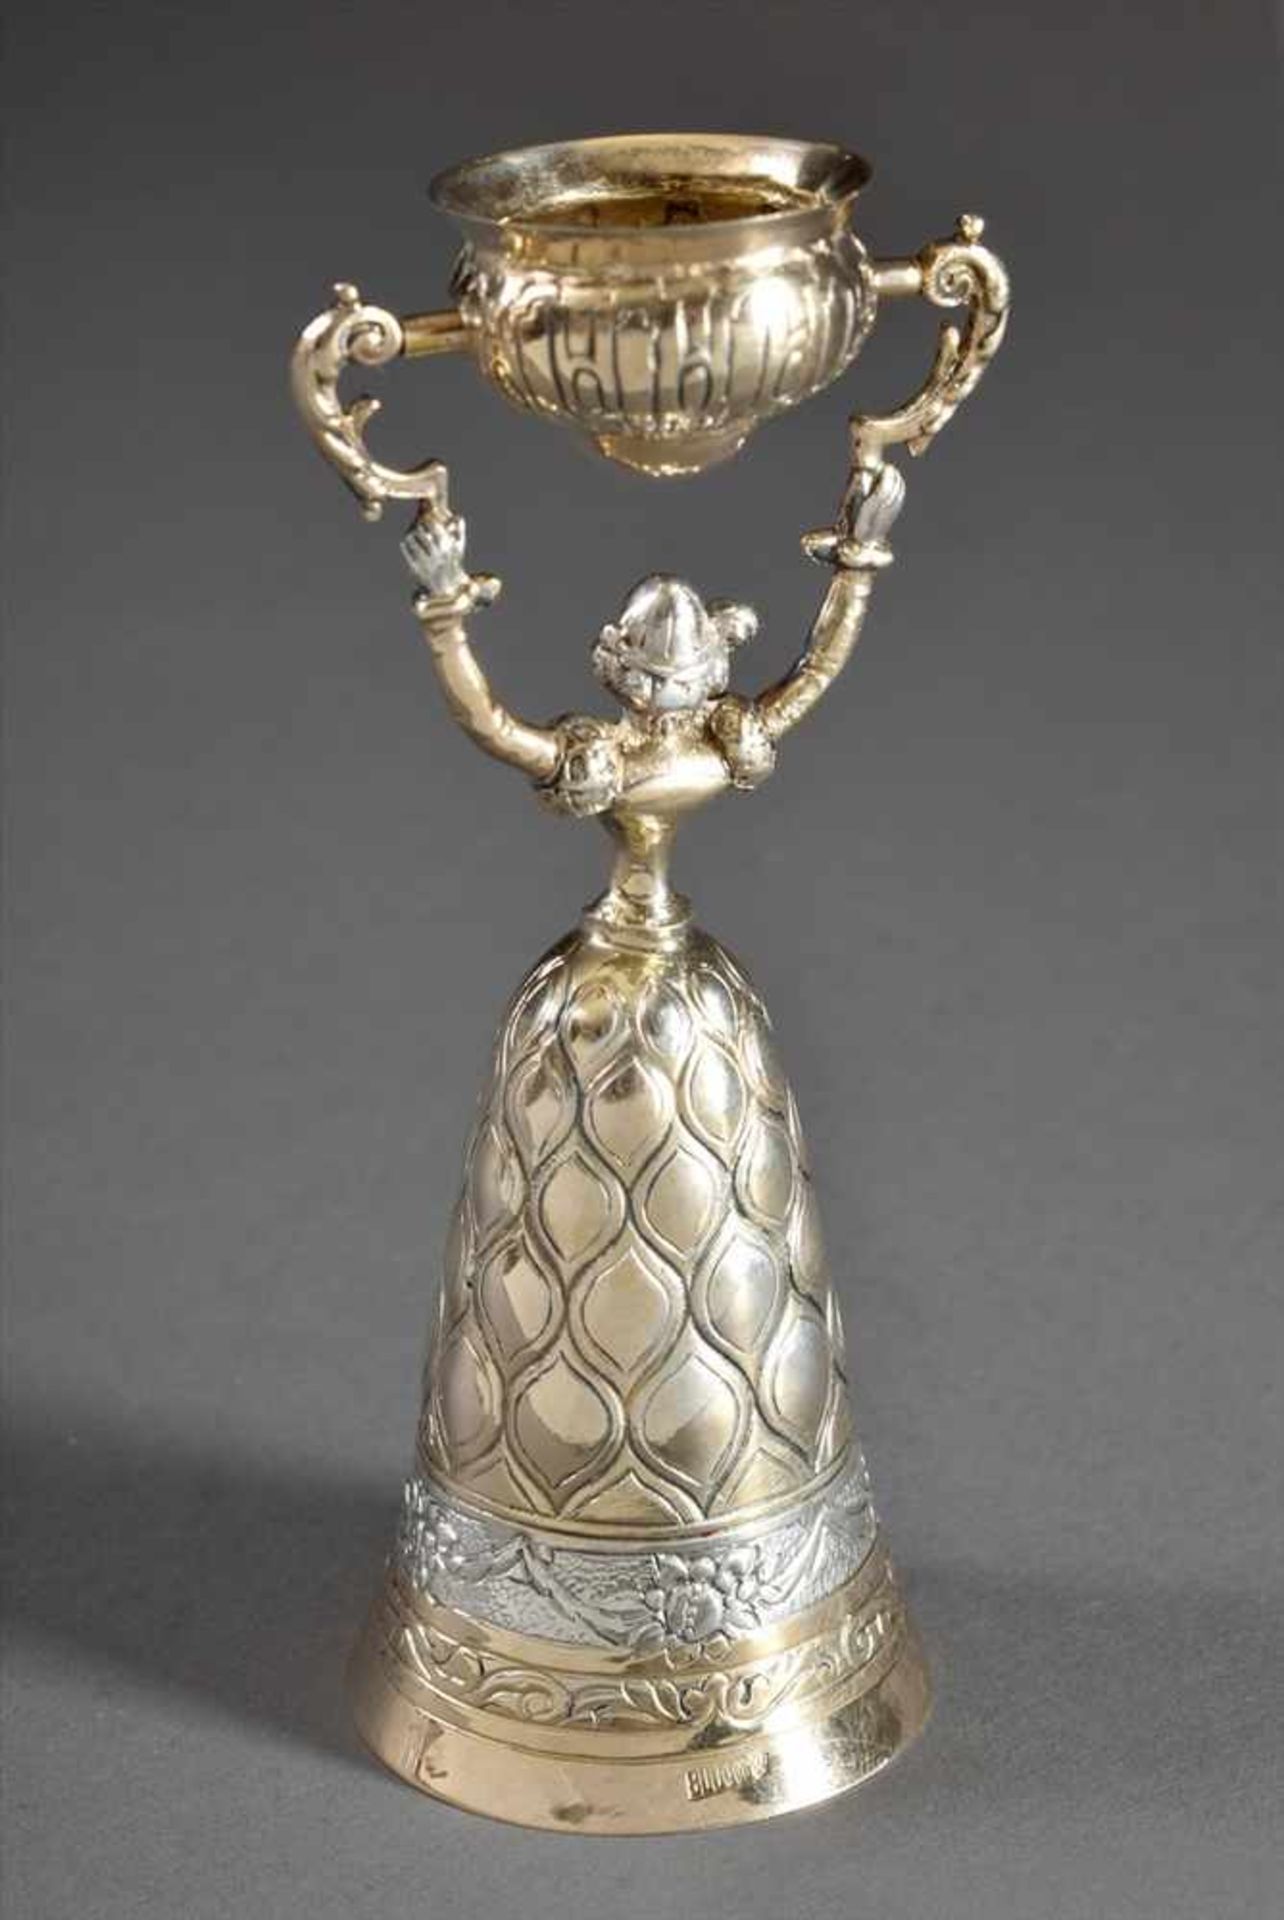 Hochzeits-Scherzbecher nach antikem Vorbild, Ludwig Neresheimer, Silber 800 vergoldet, 87g, H. 12, - Bild 2 aus 2